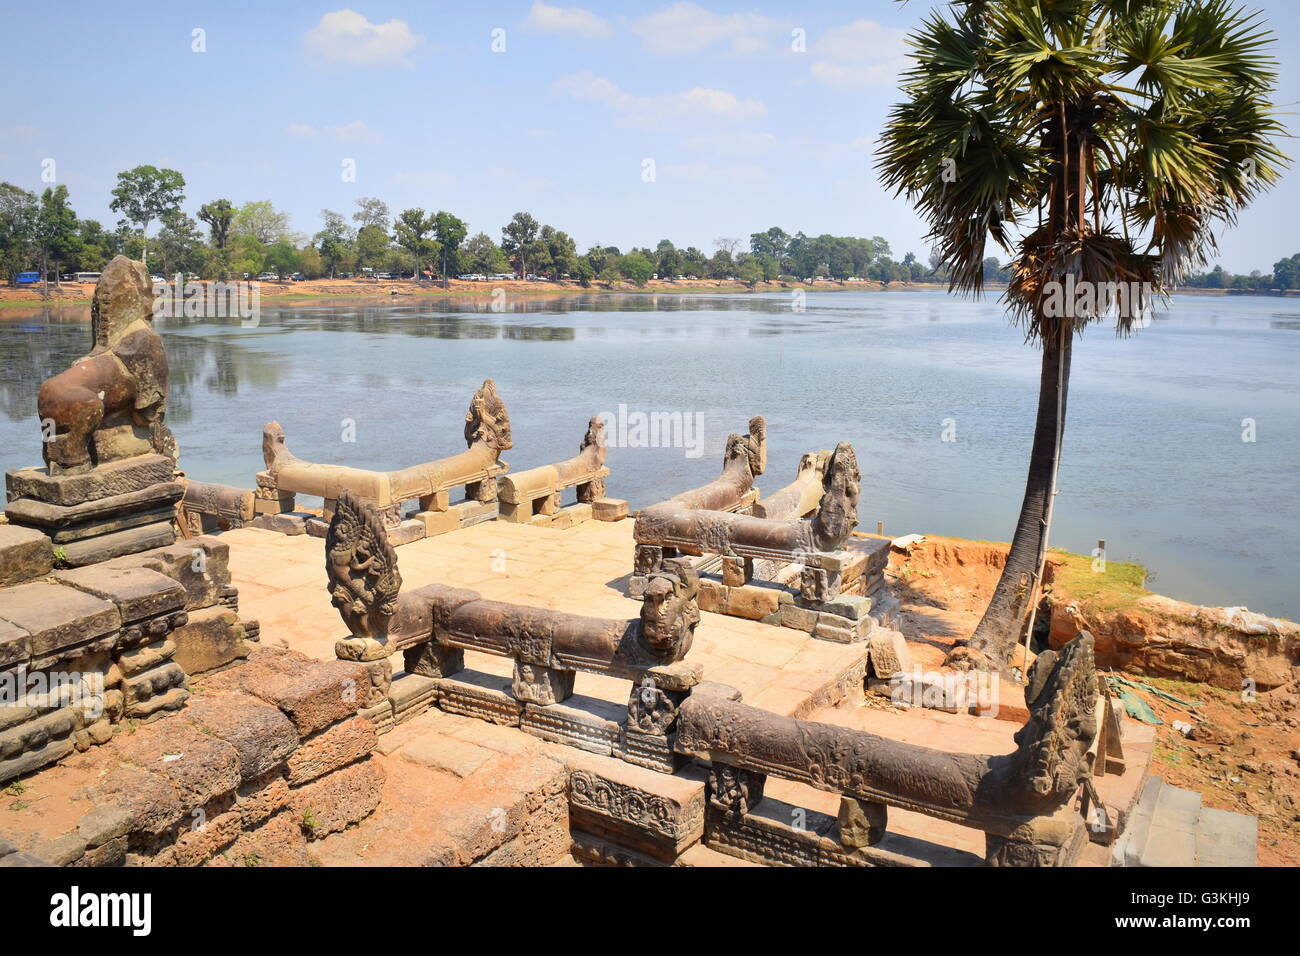 Sra Srang abluzioni grande piscina e terrazza di antica Angkor templi buddisti della Cambogia Foto Stock